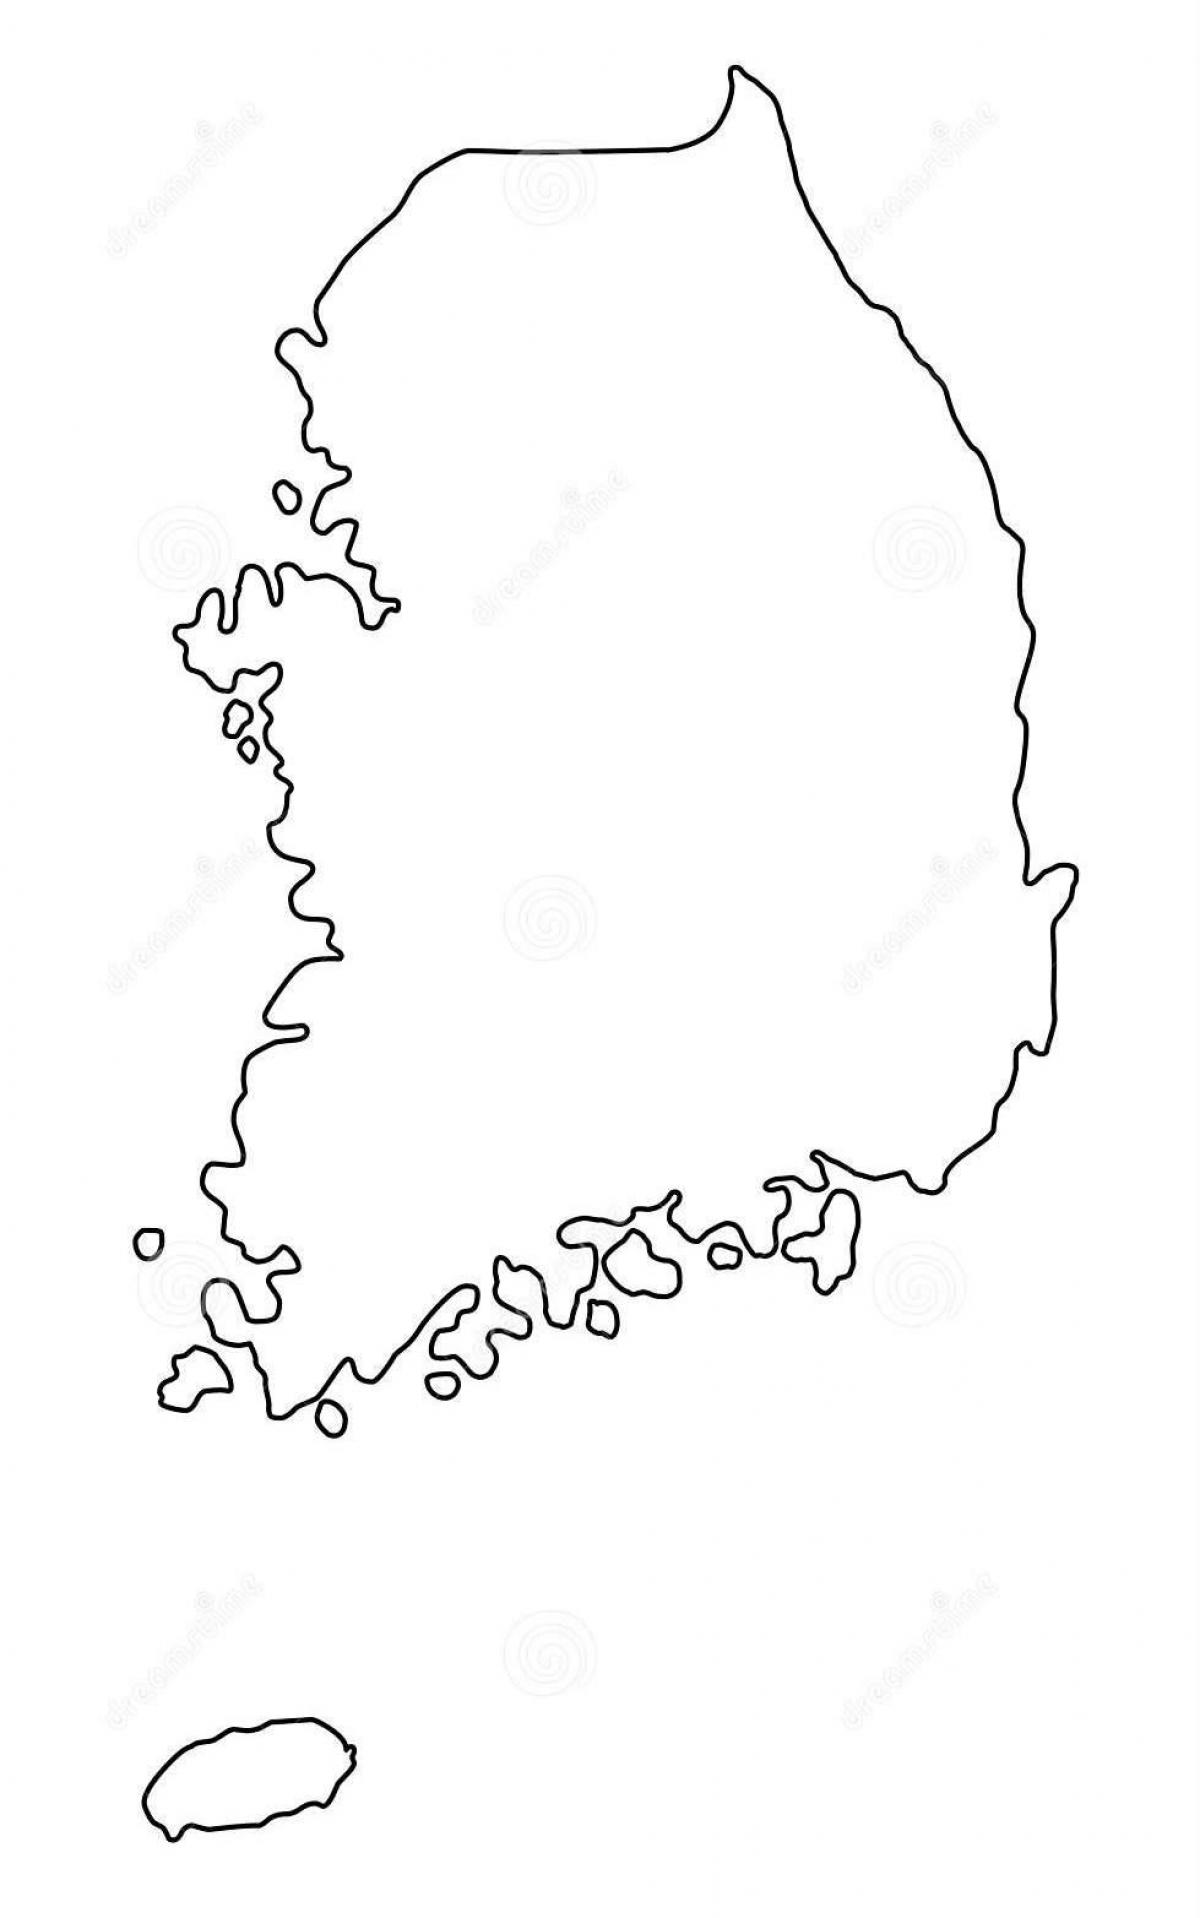 South Korea (ROK) contours map